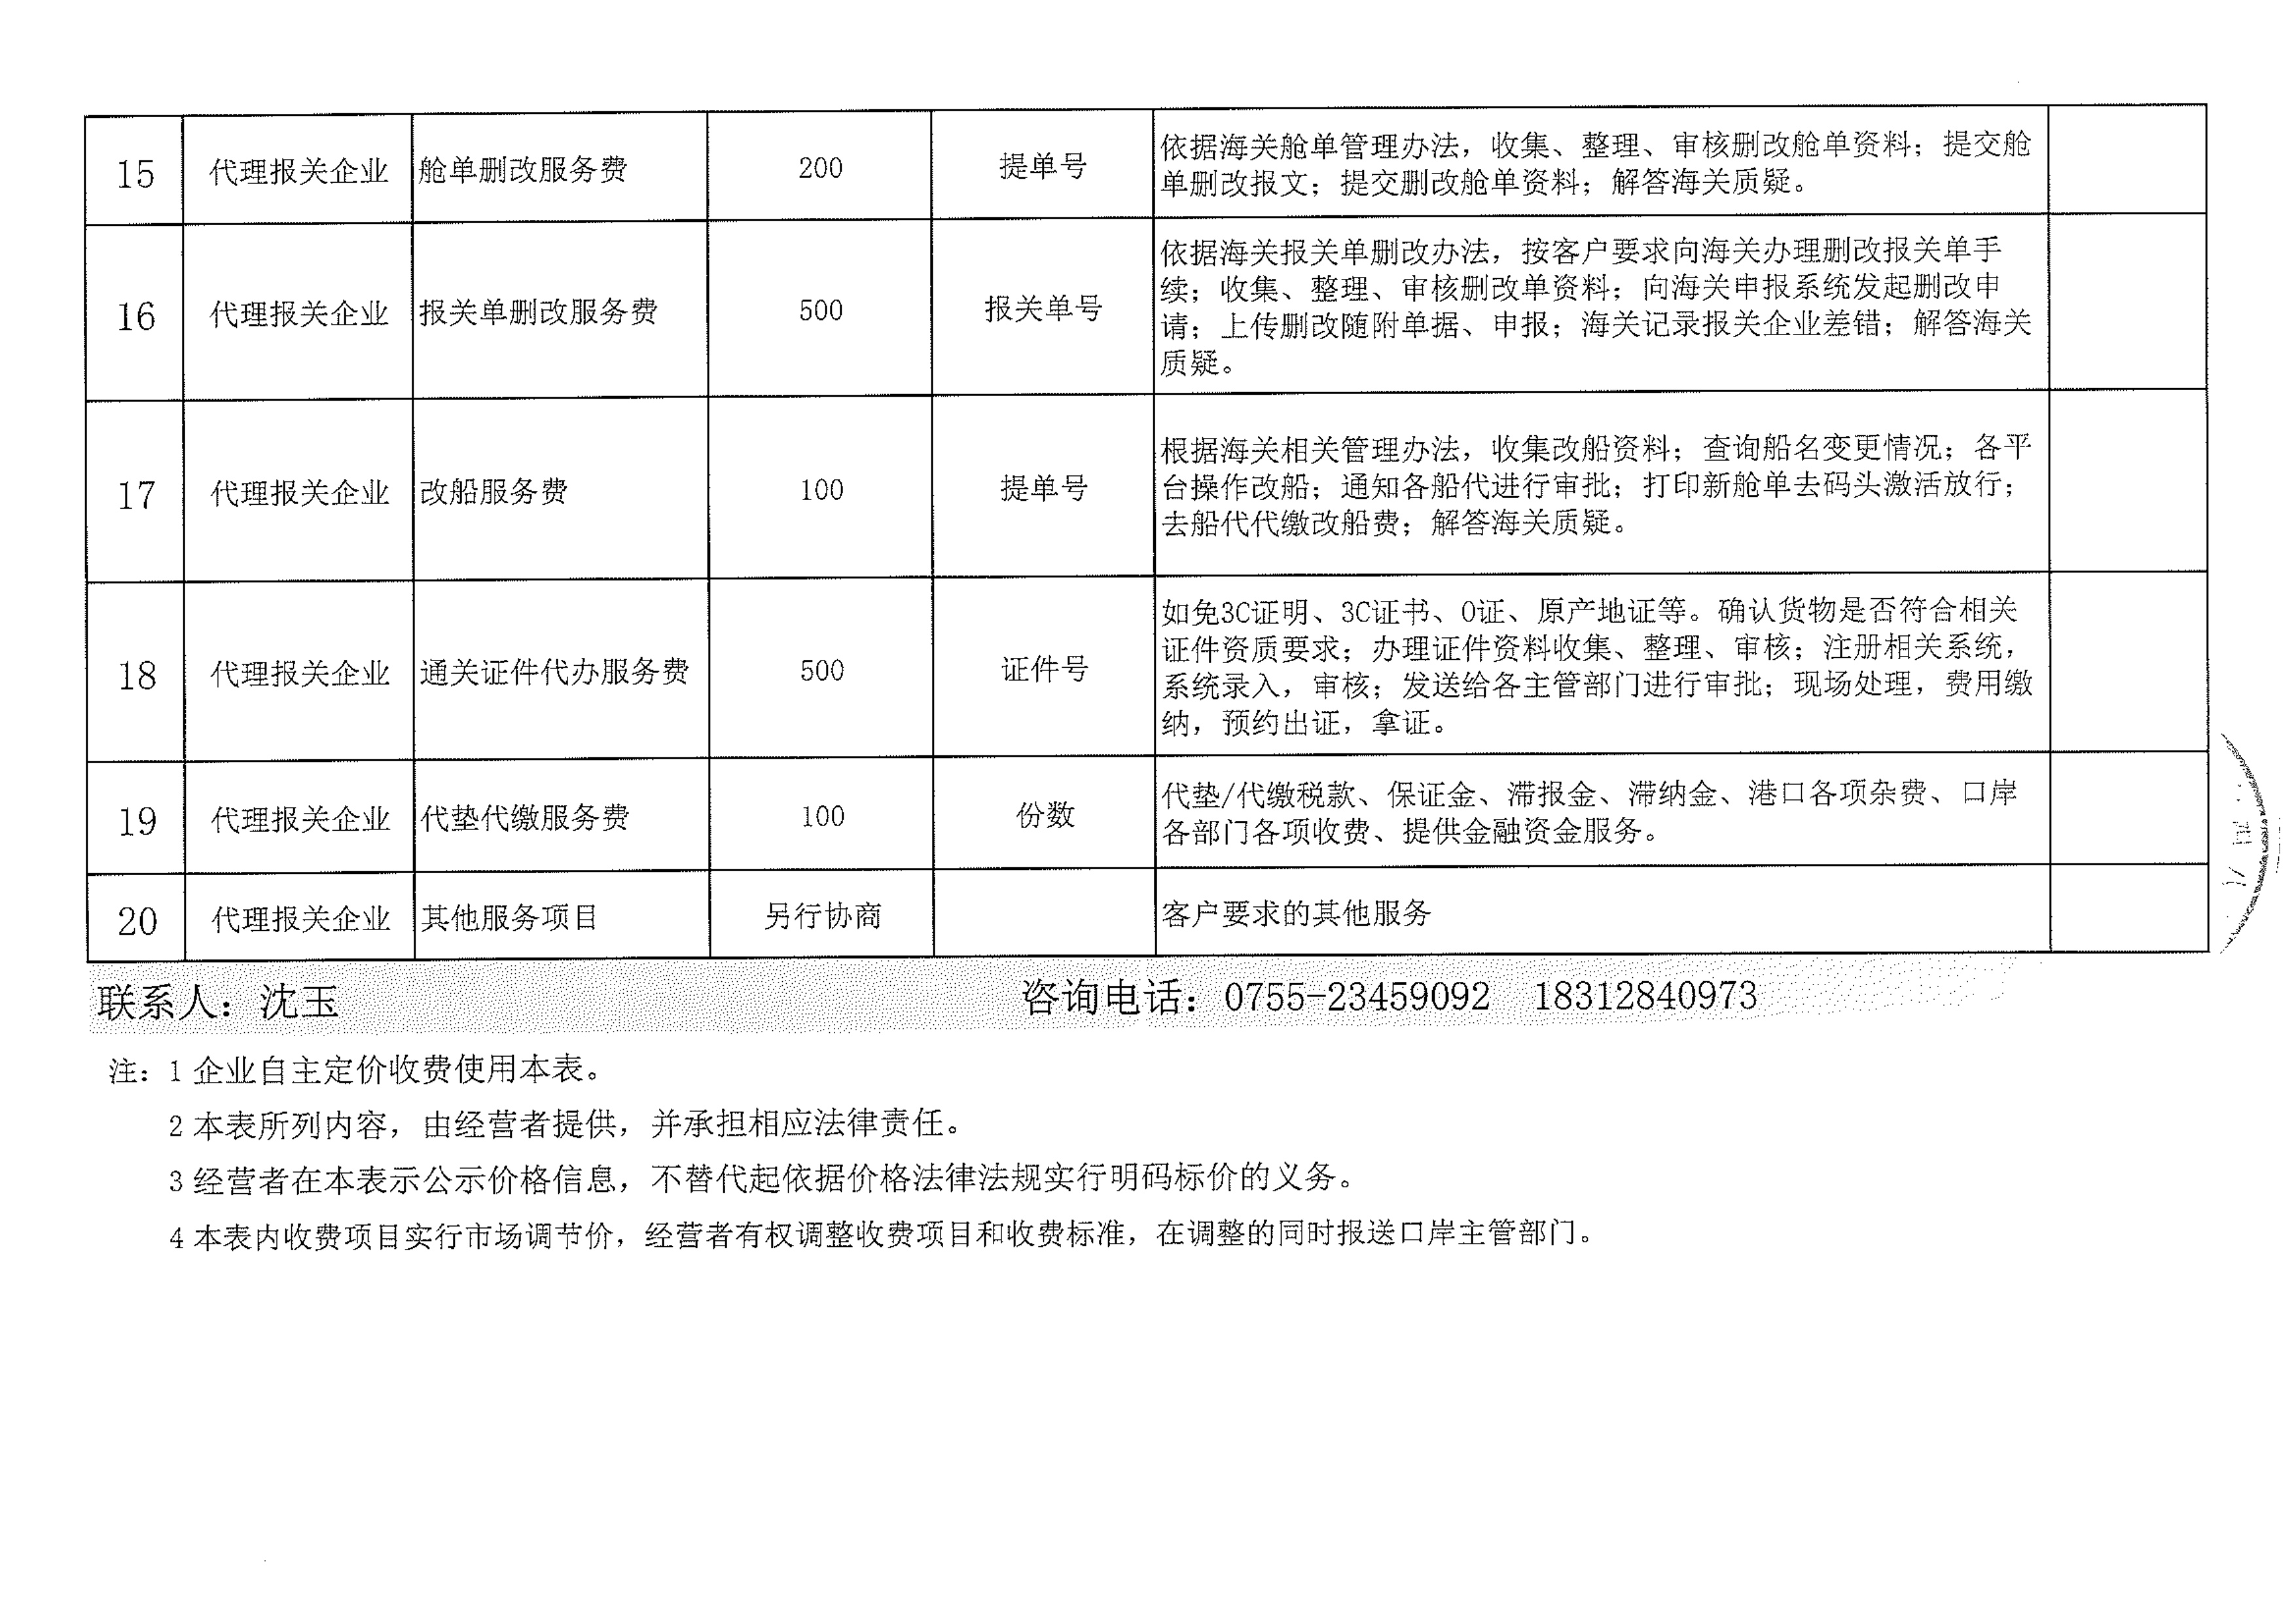 深圳市鑫通货运代理有限公司收费目录清单_3.jpg